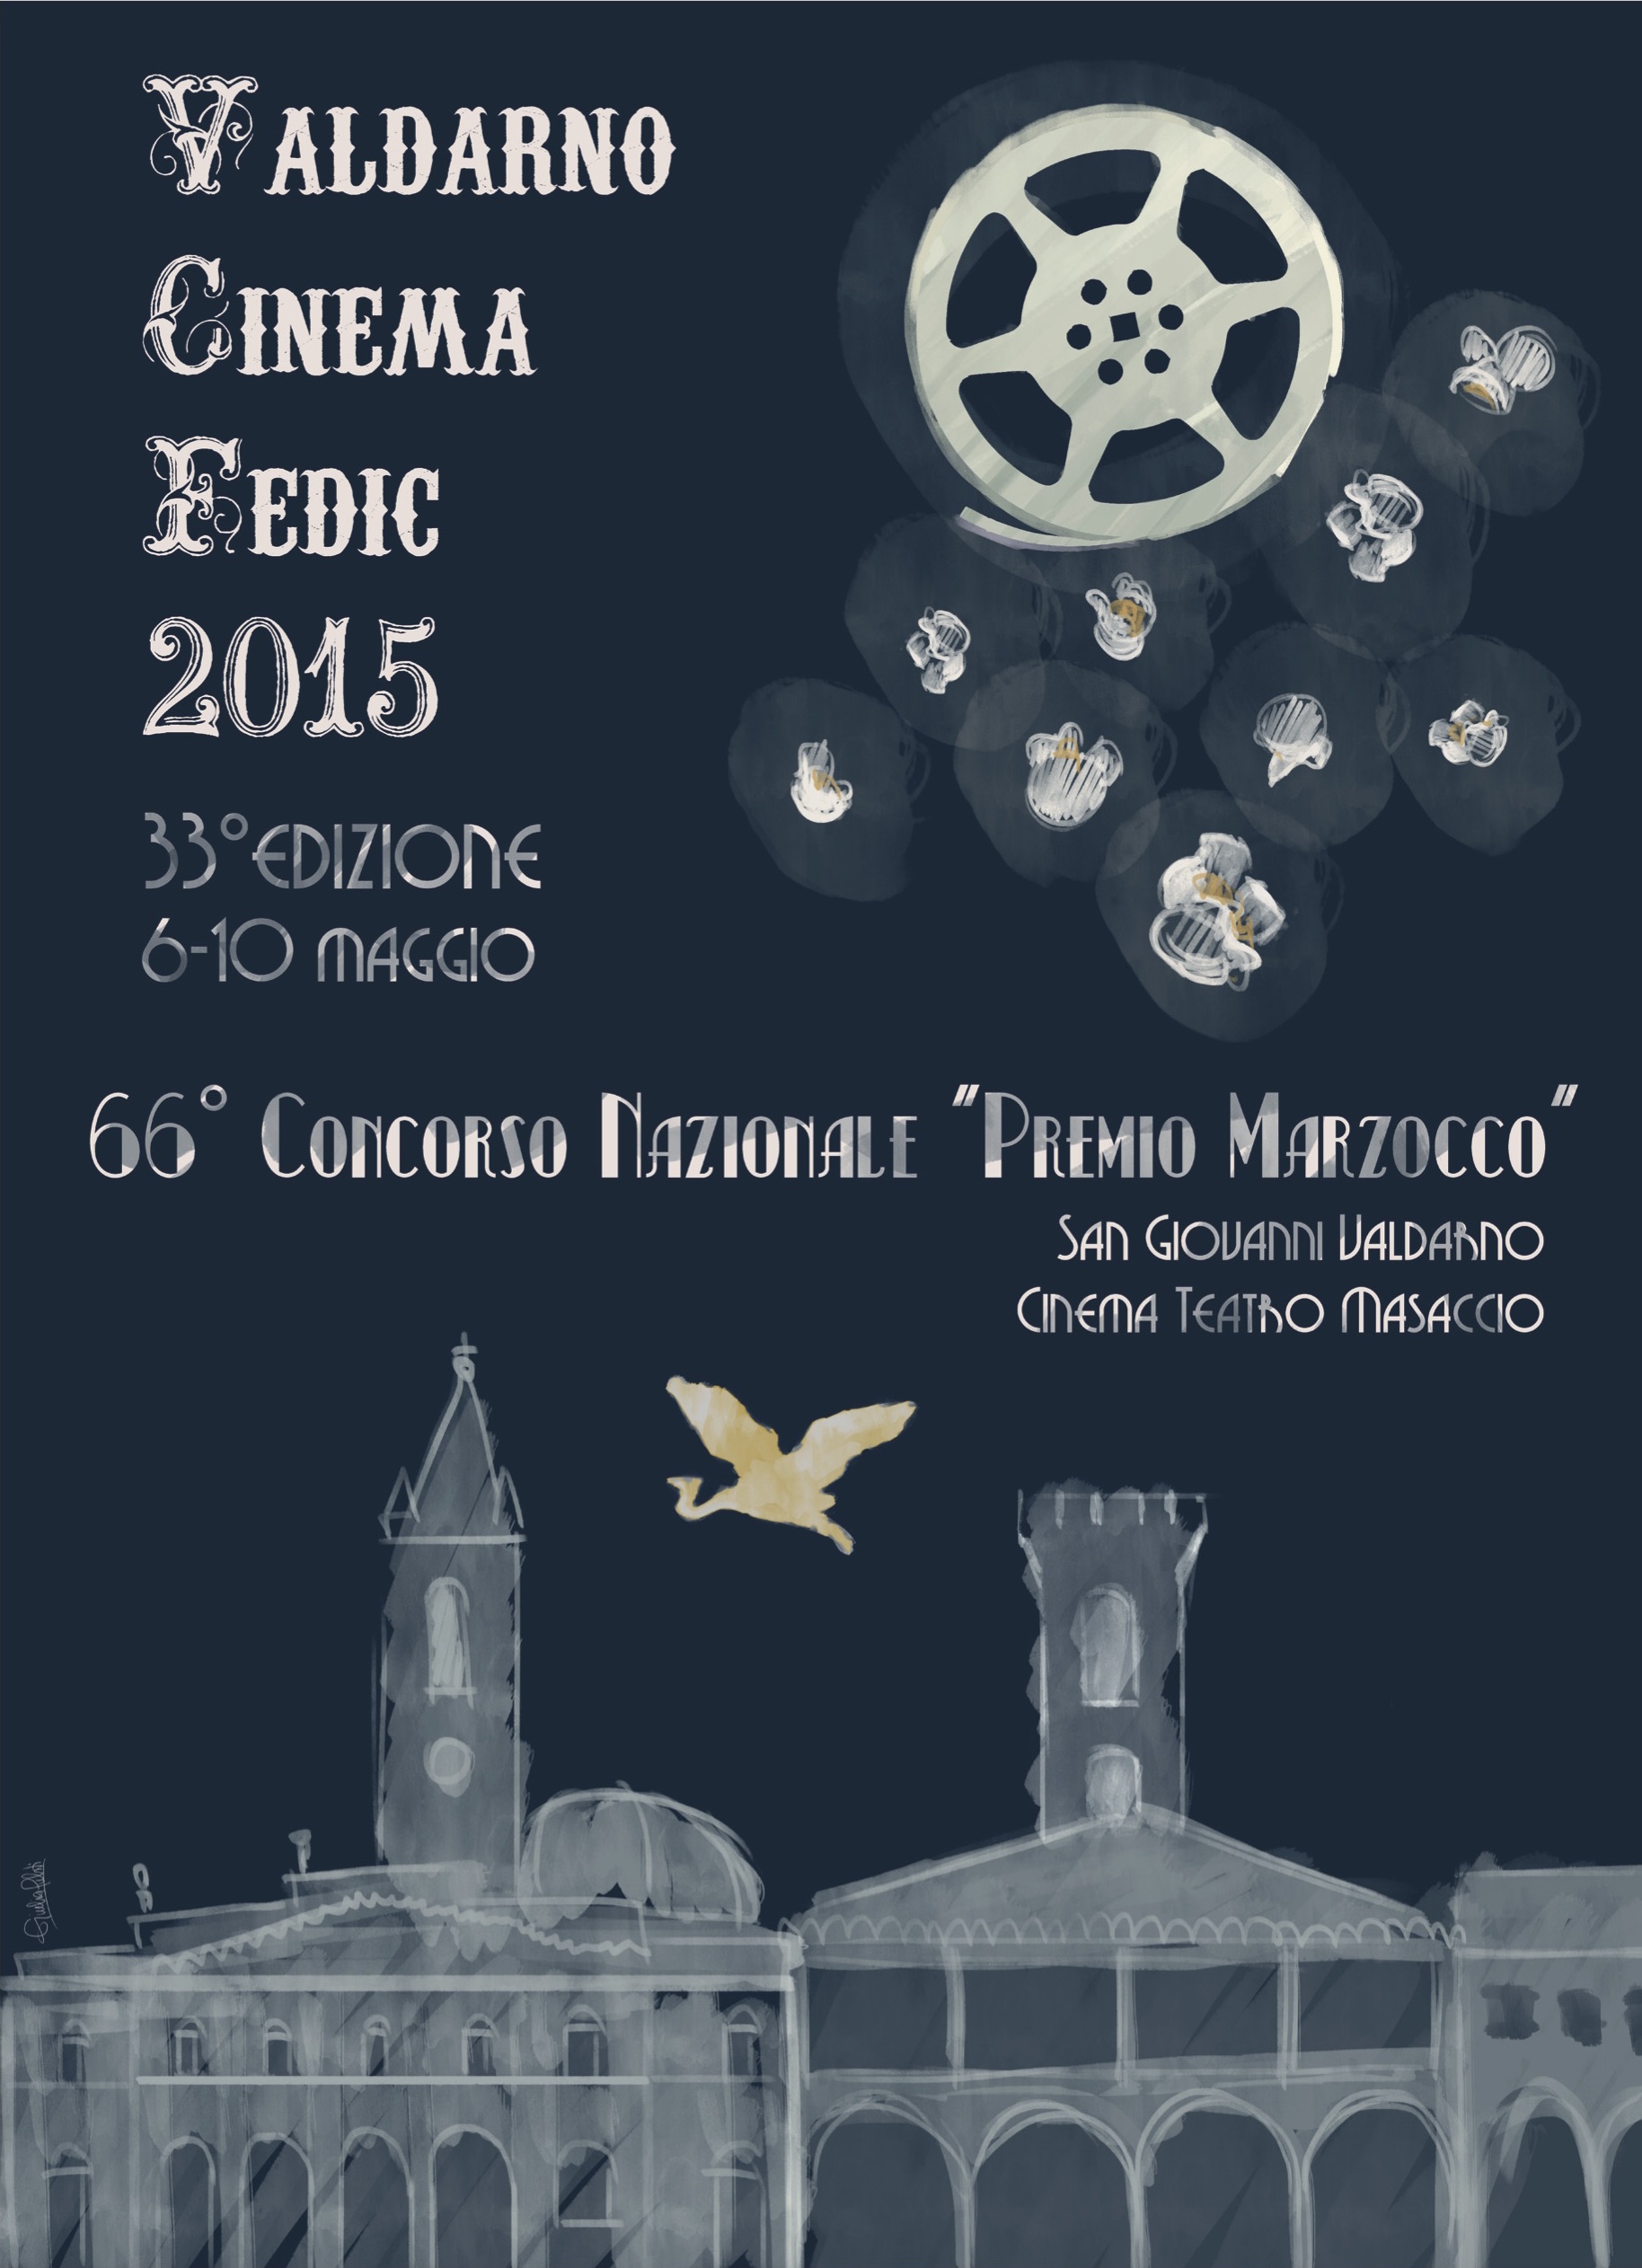 E’ iniziata la XXXIII edizione del Valdarno Cinema Fedic